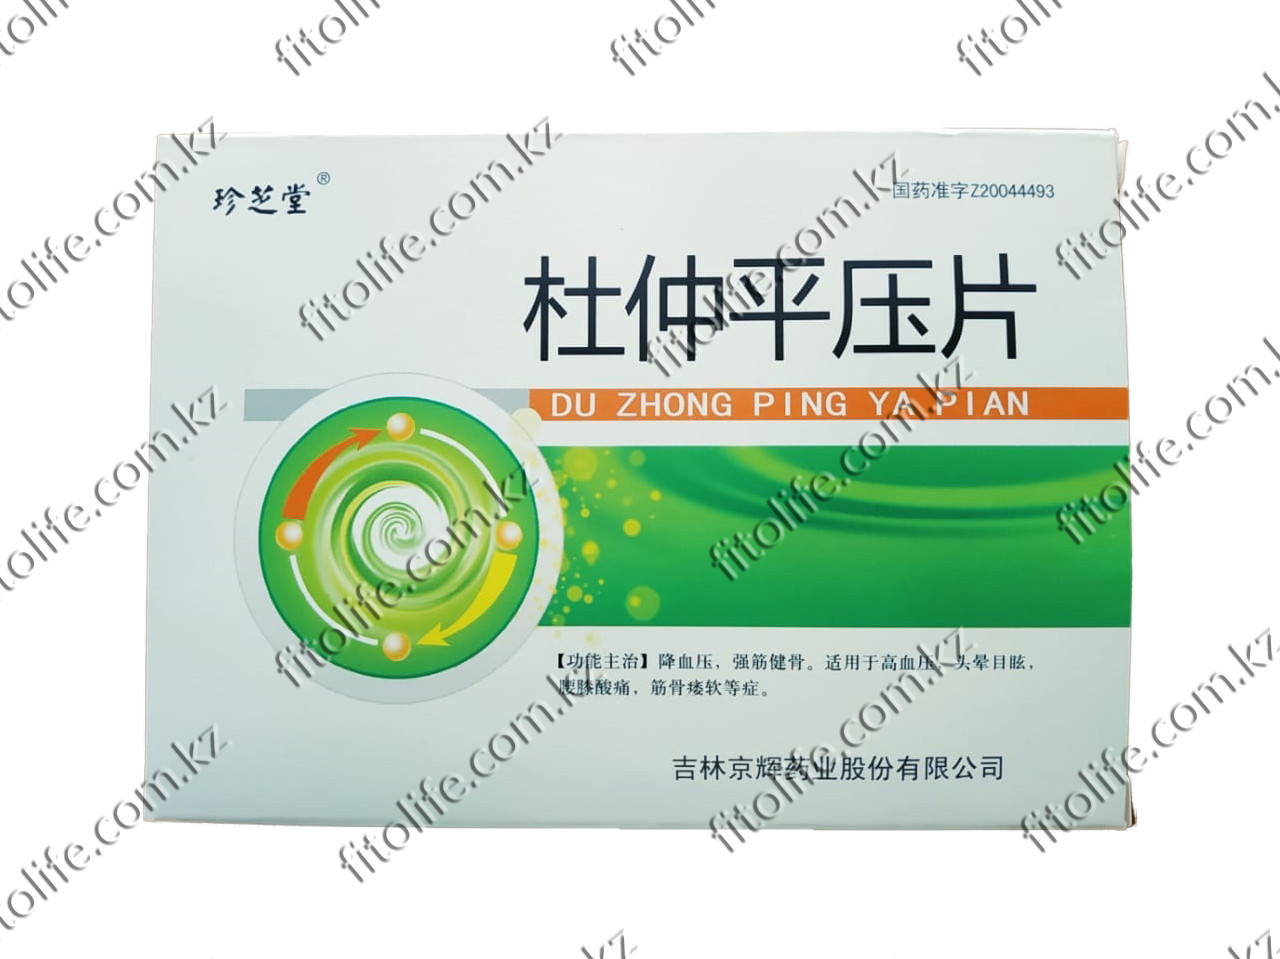 Таблетки "DU ZHONG PING YA PIAN" на китайских травах для снижения давления